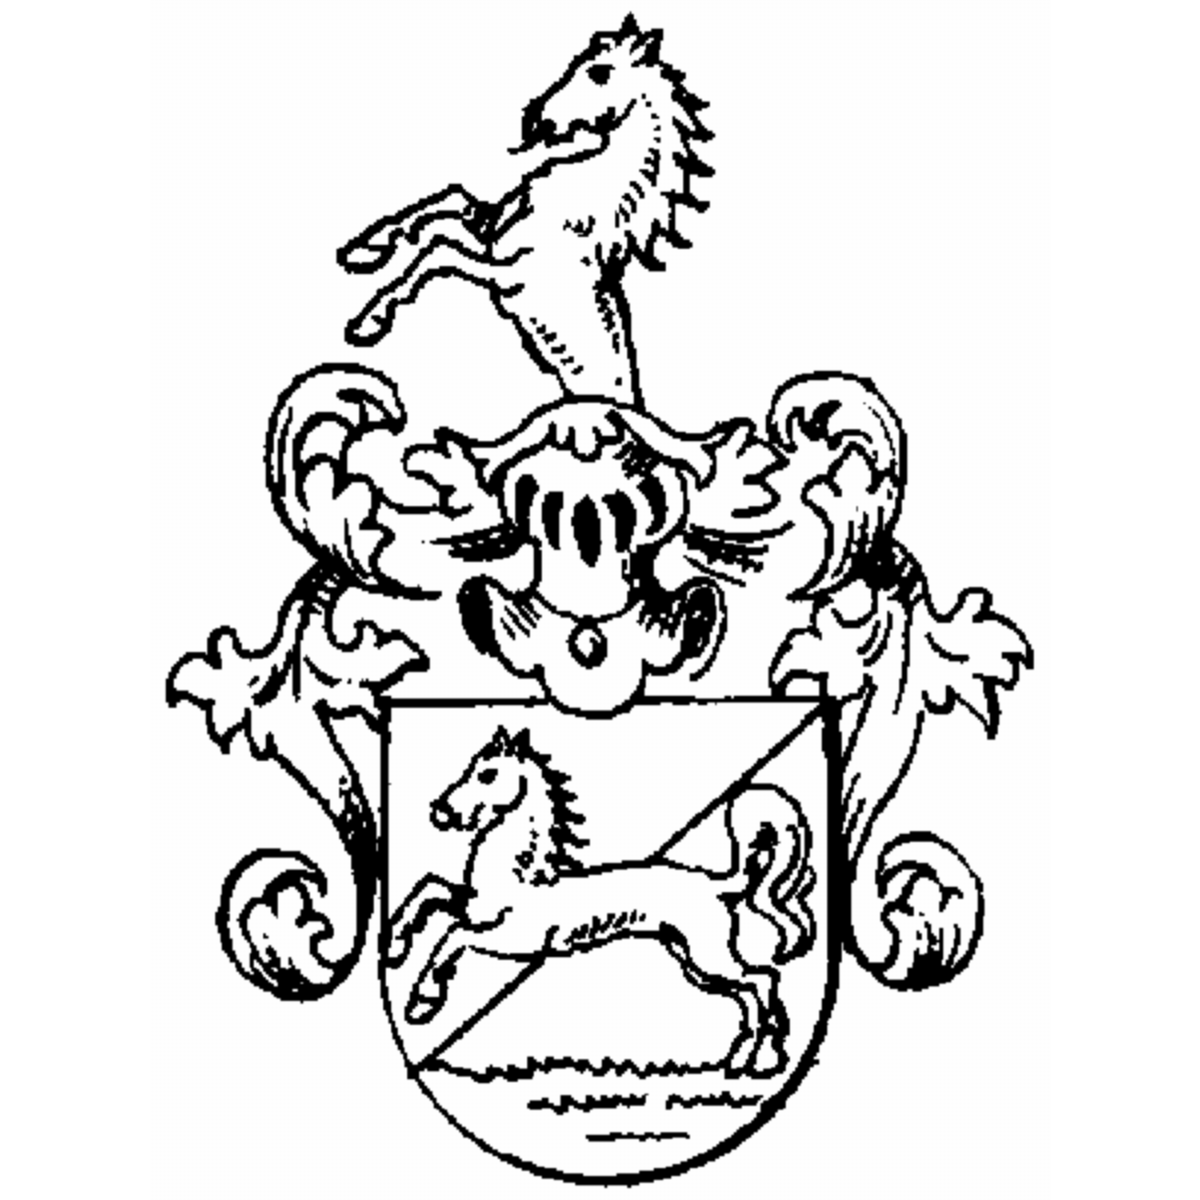 Wappen der Familie Rottweiler